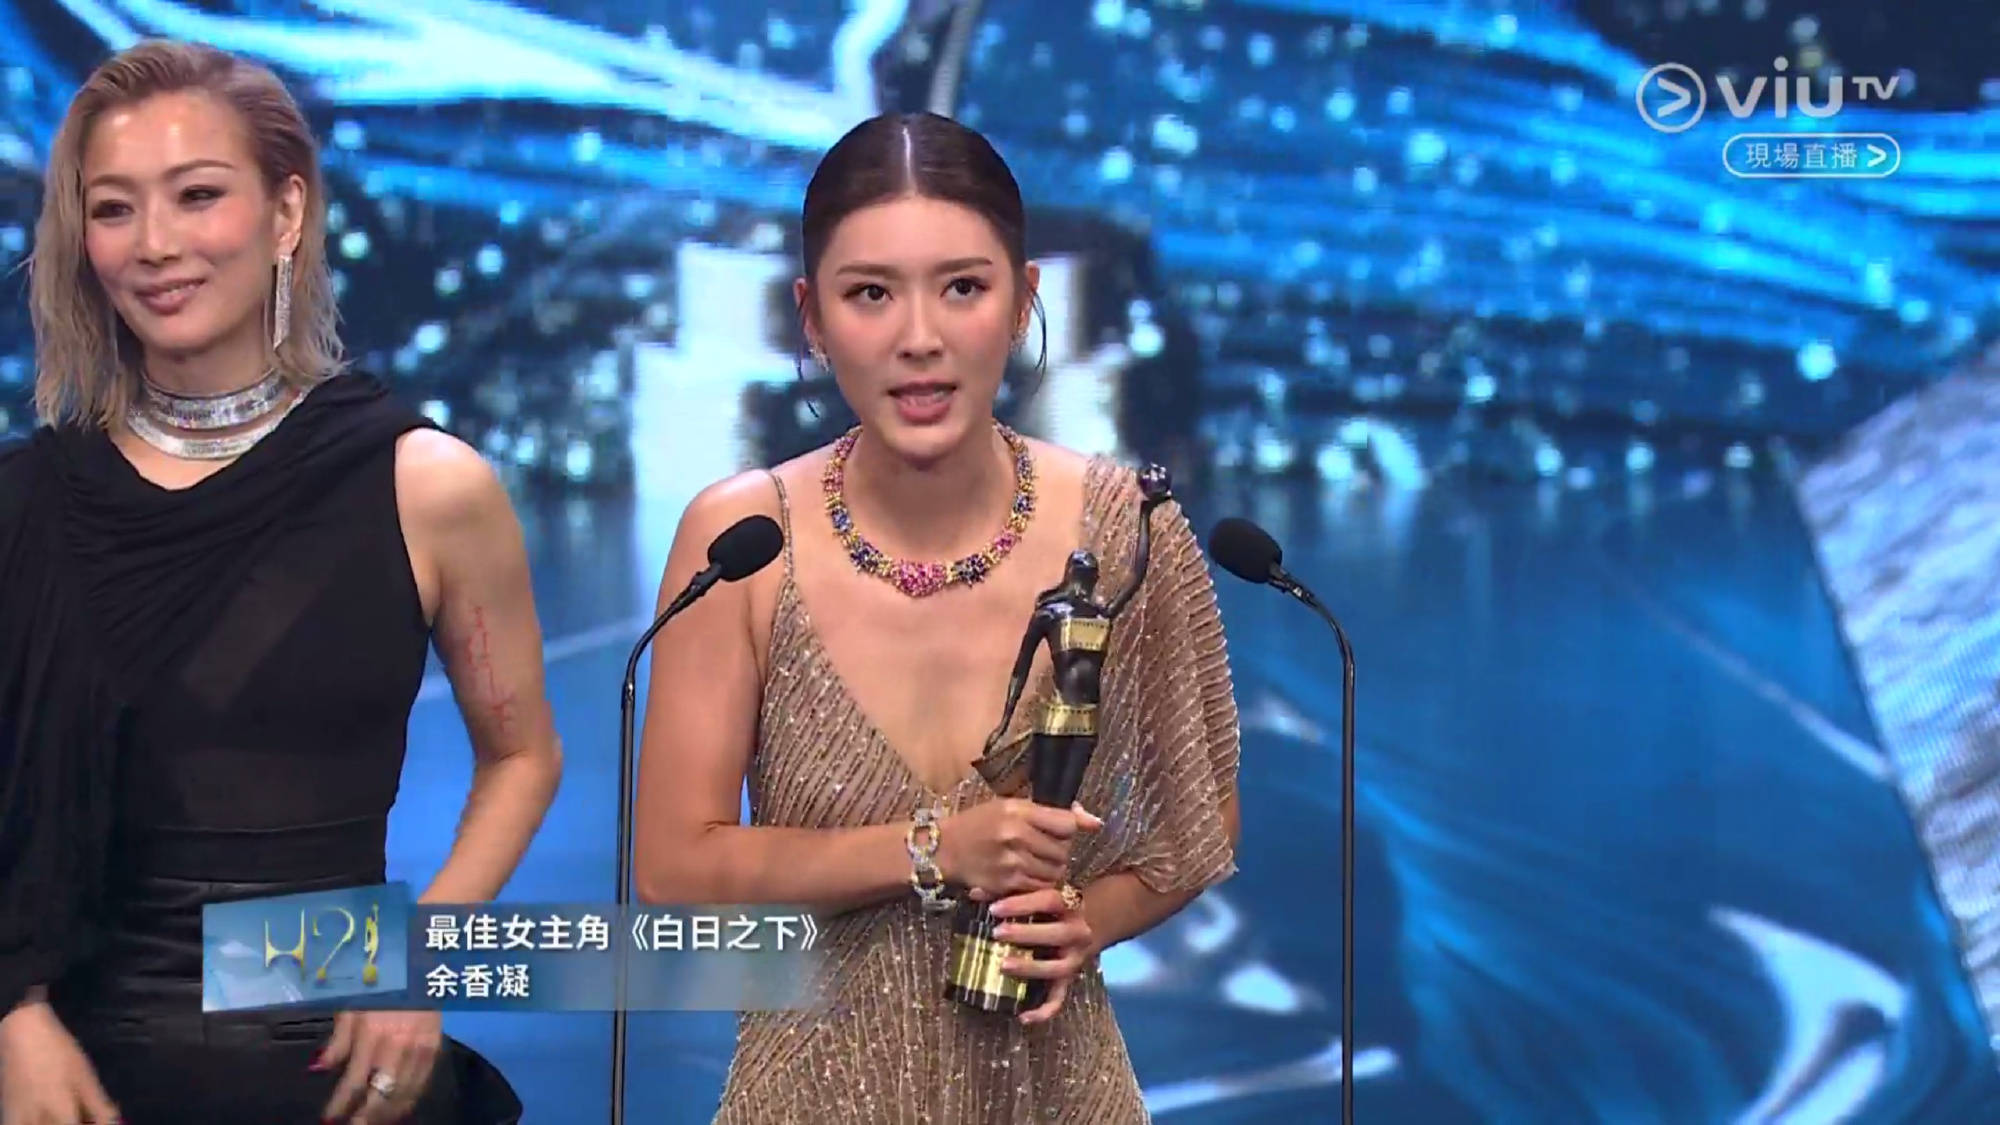 余香凝凭《白日之下》获金像奖最佳女主角 影片目前正在全国热映 